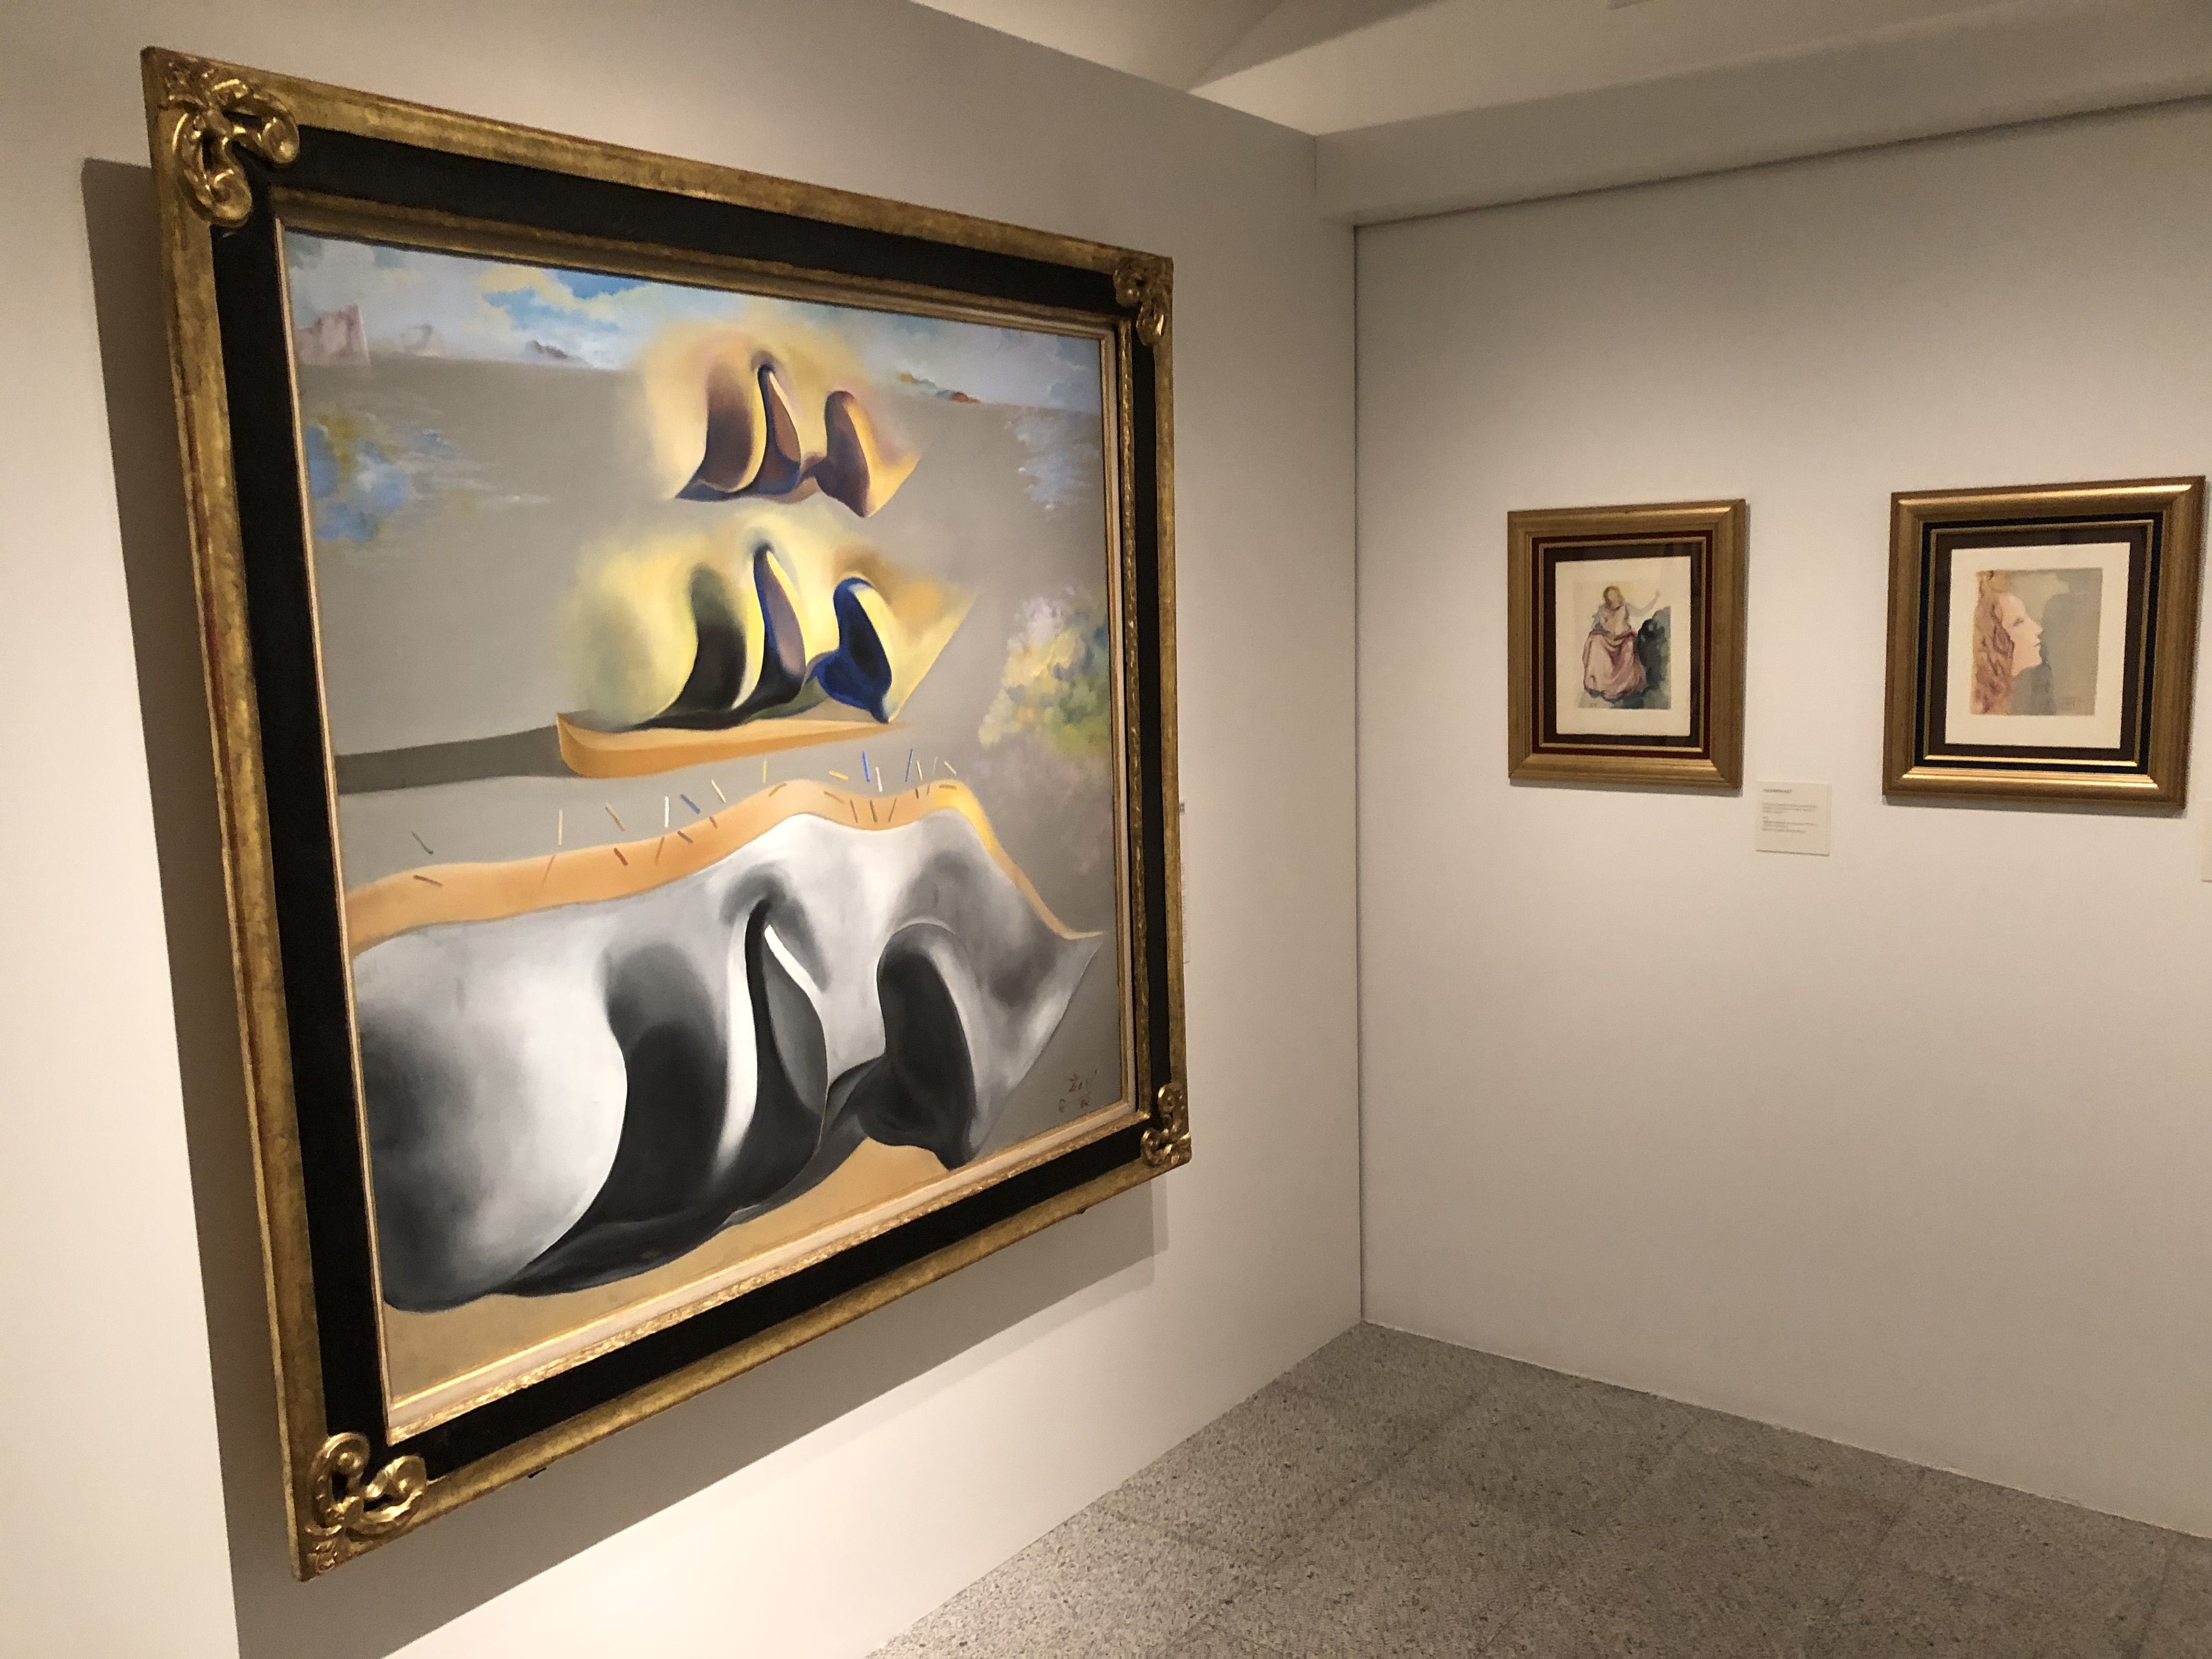 Del amor de Dalí y Gala a las infidelidades de Picasso: artistas a través de sus relaciones